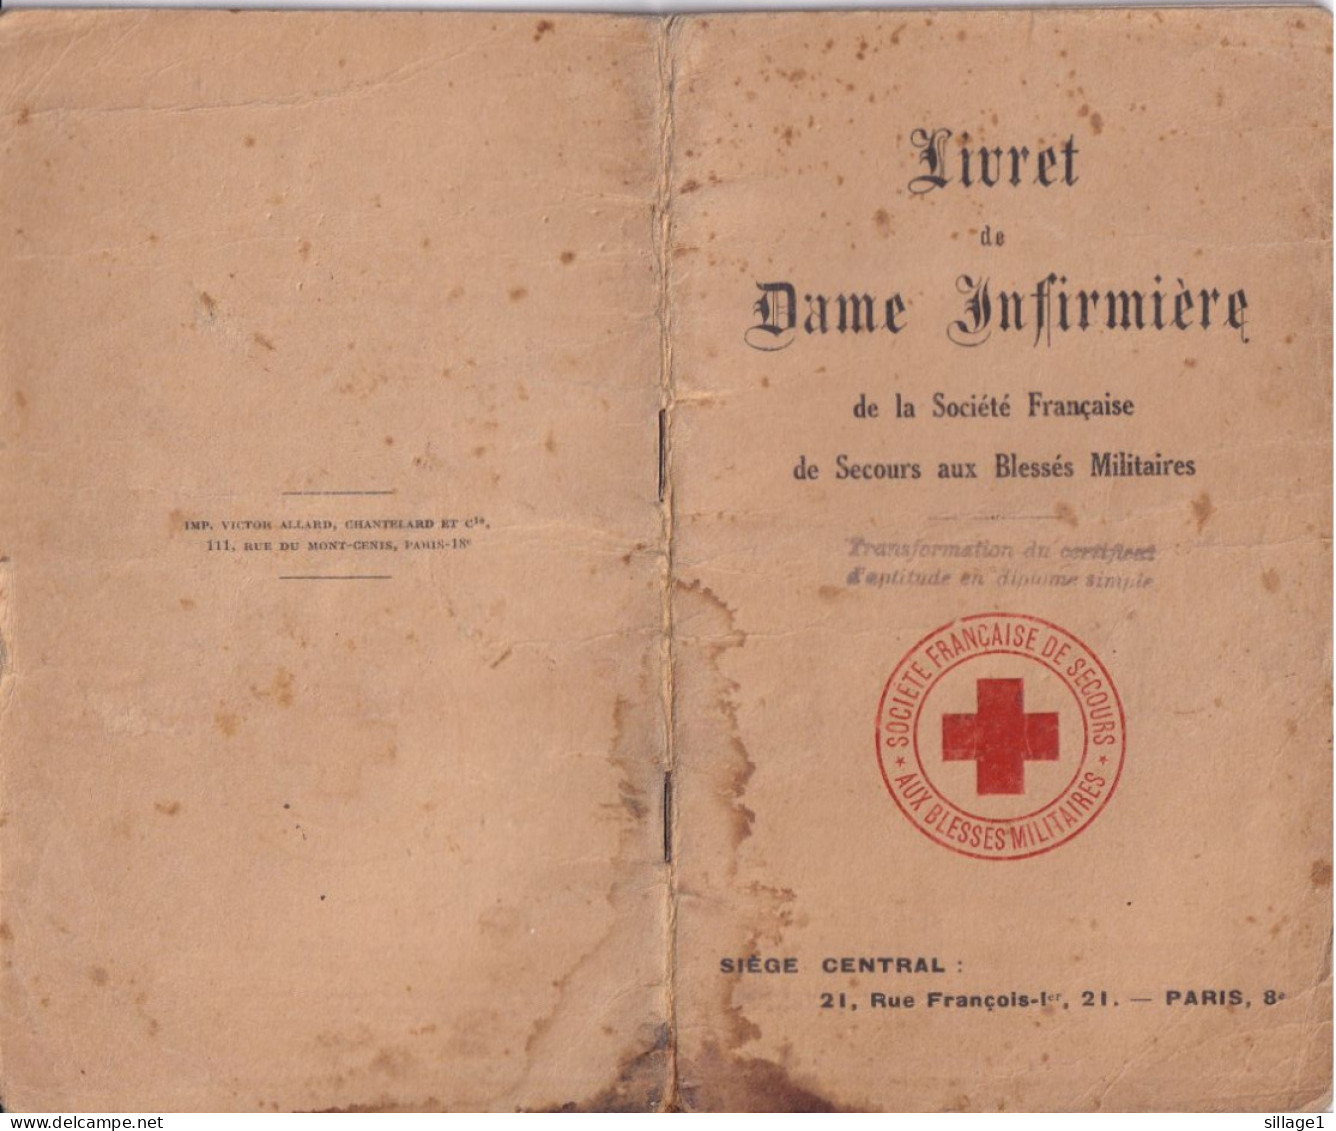 Boulogne S/Mer Livret De Dame Infirmière De Melle Wiart De 1930 Croix Rouge Française - 1915 - WW1 SSBM, ADF, UFF - Rotes Kreuz